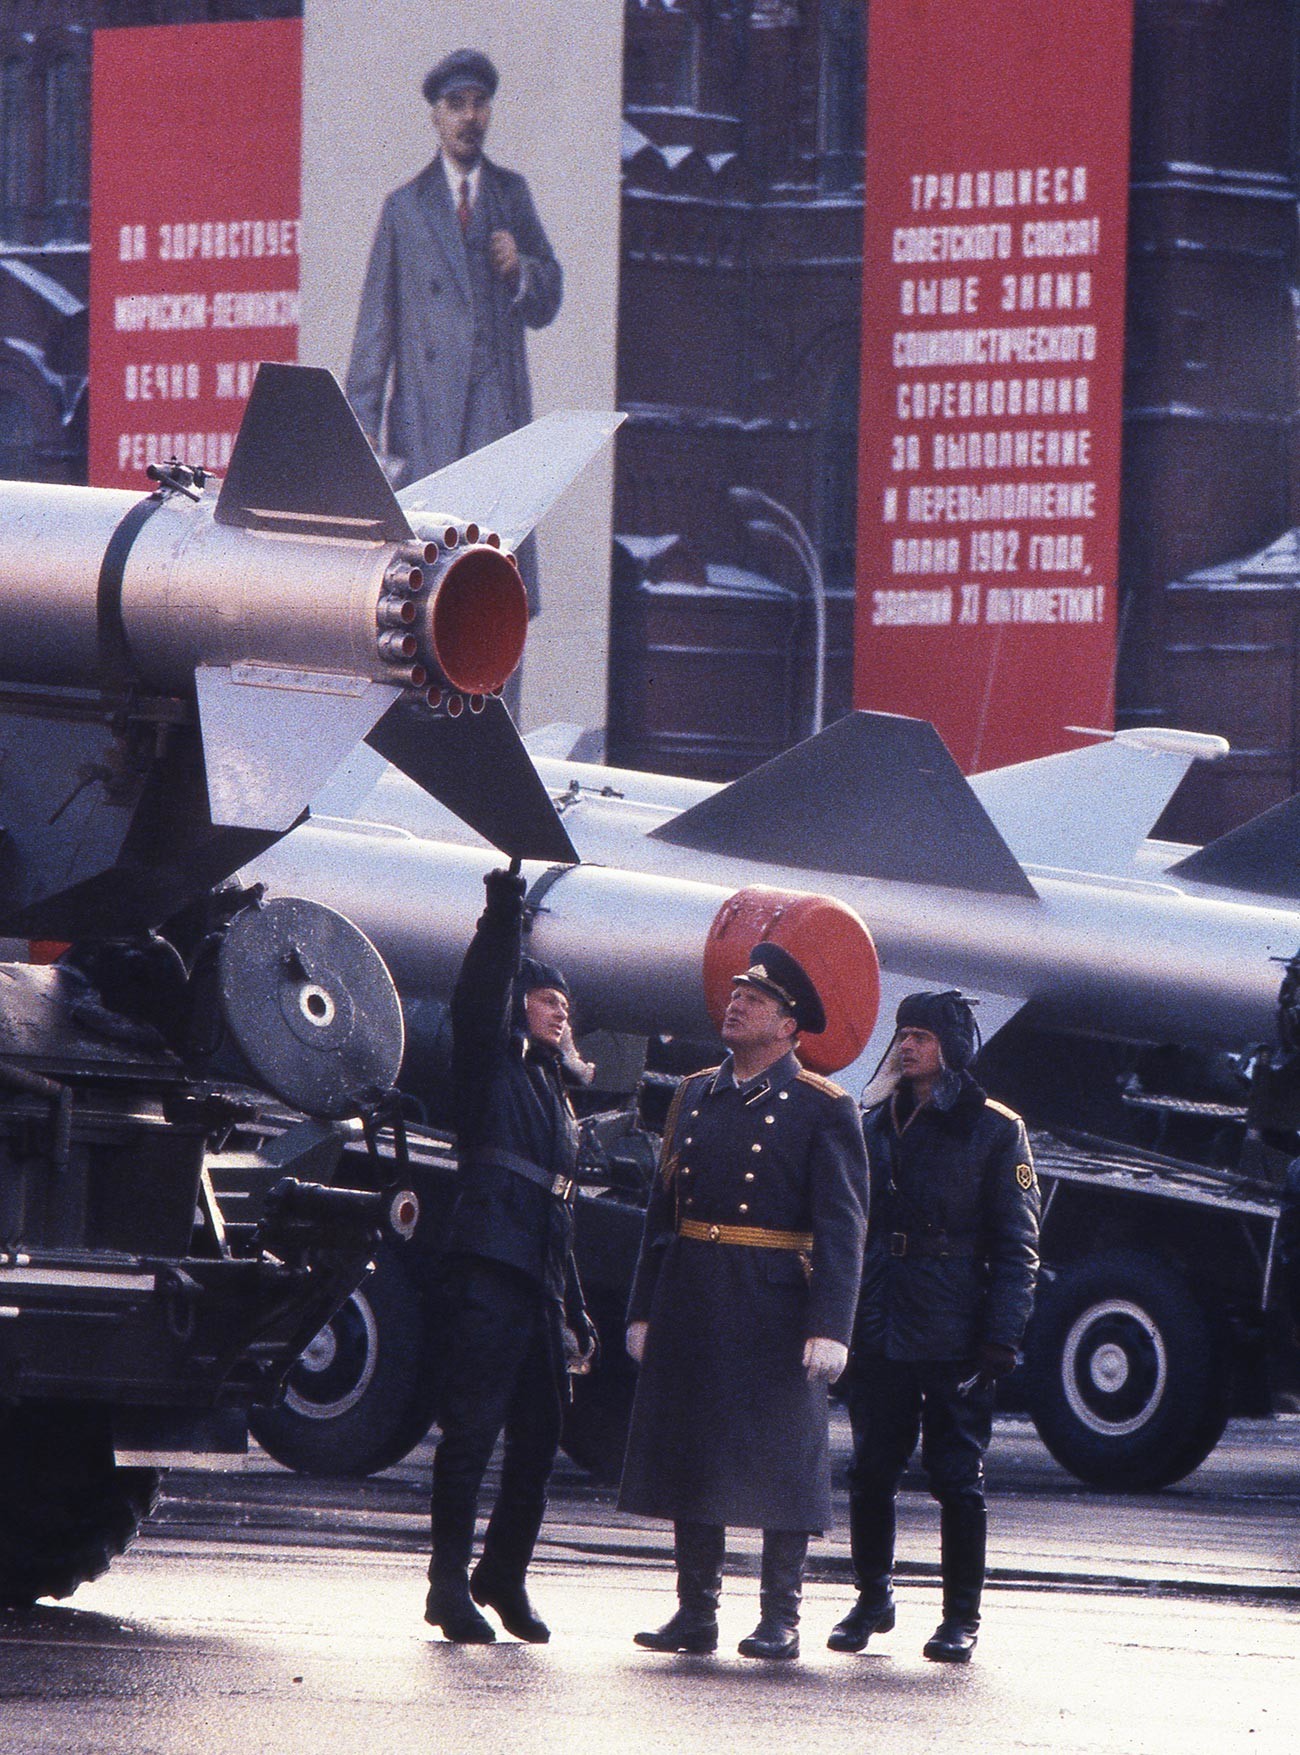 Офицери со војници под ракета која може да носи нуклеарна боева глава пред почетокот на парадата на Црвениот плоштад по повод 65-годишнината од Октомвриската револуција.